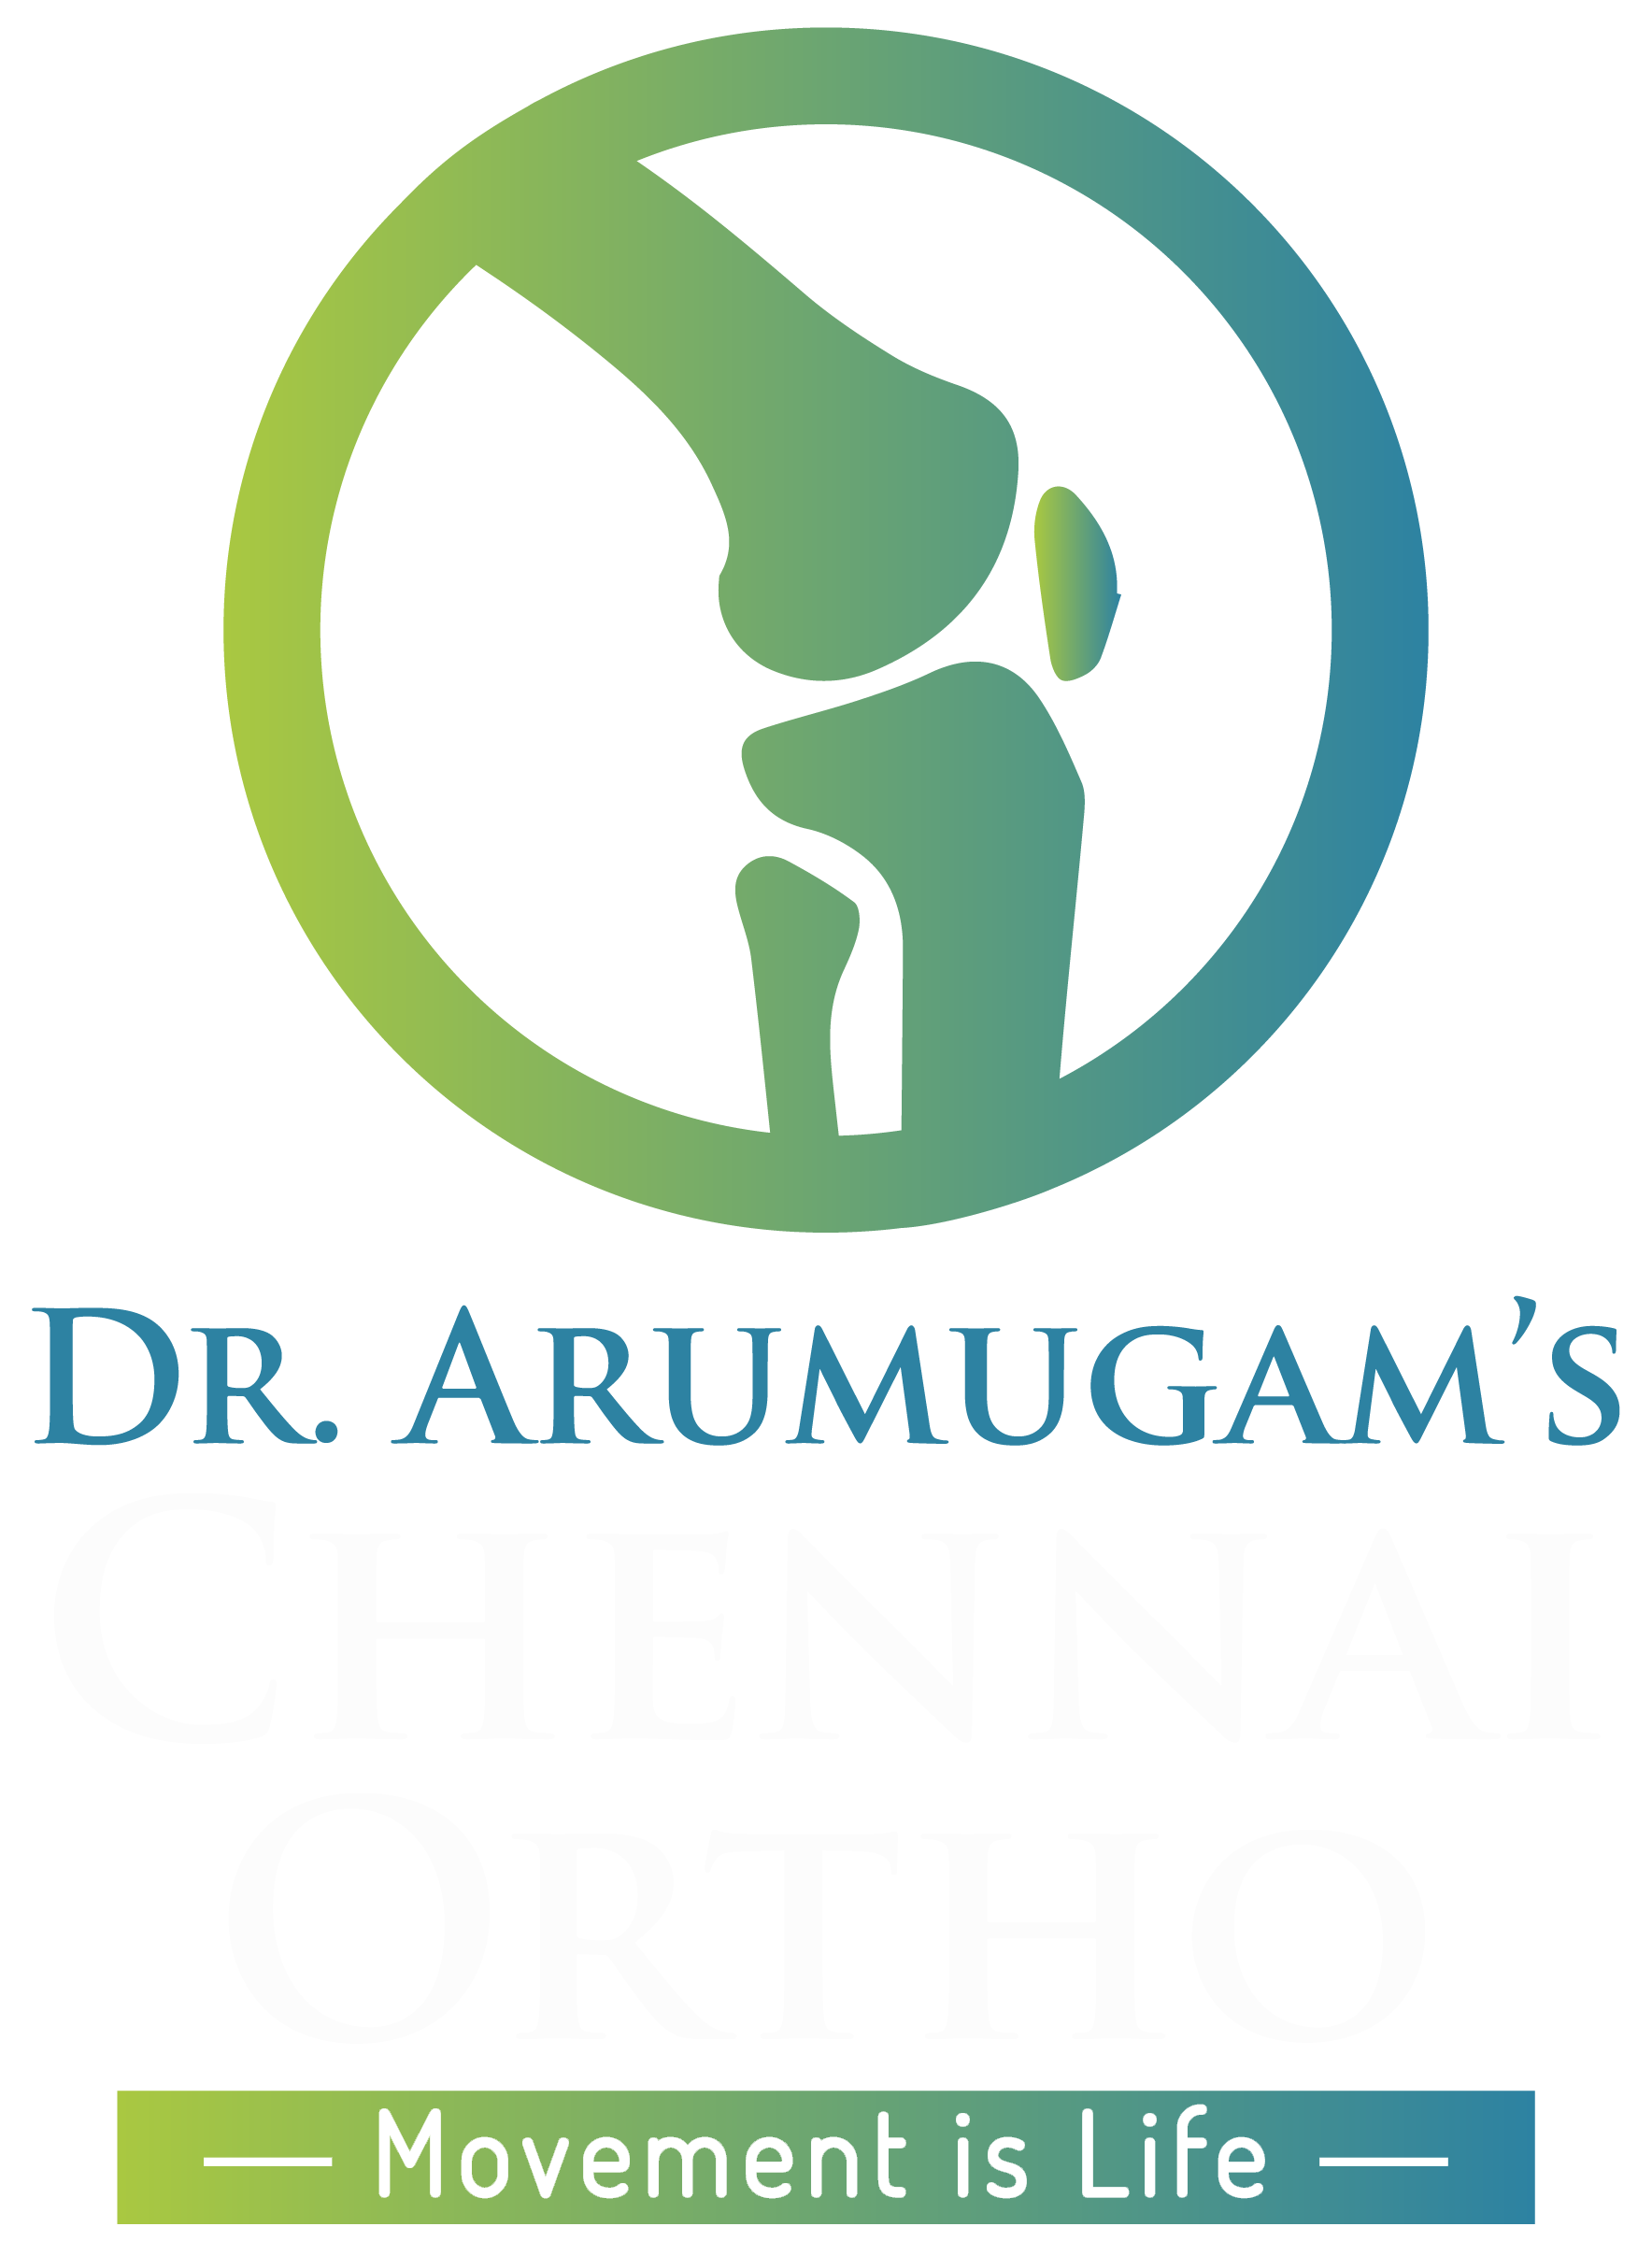 Best Orthopedic Surgeon In Chennai